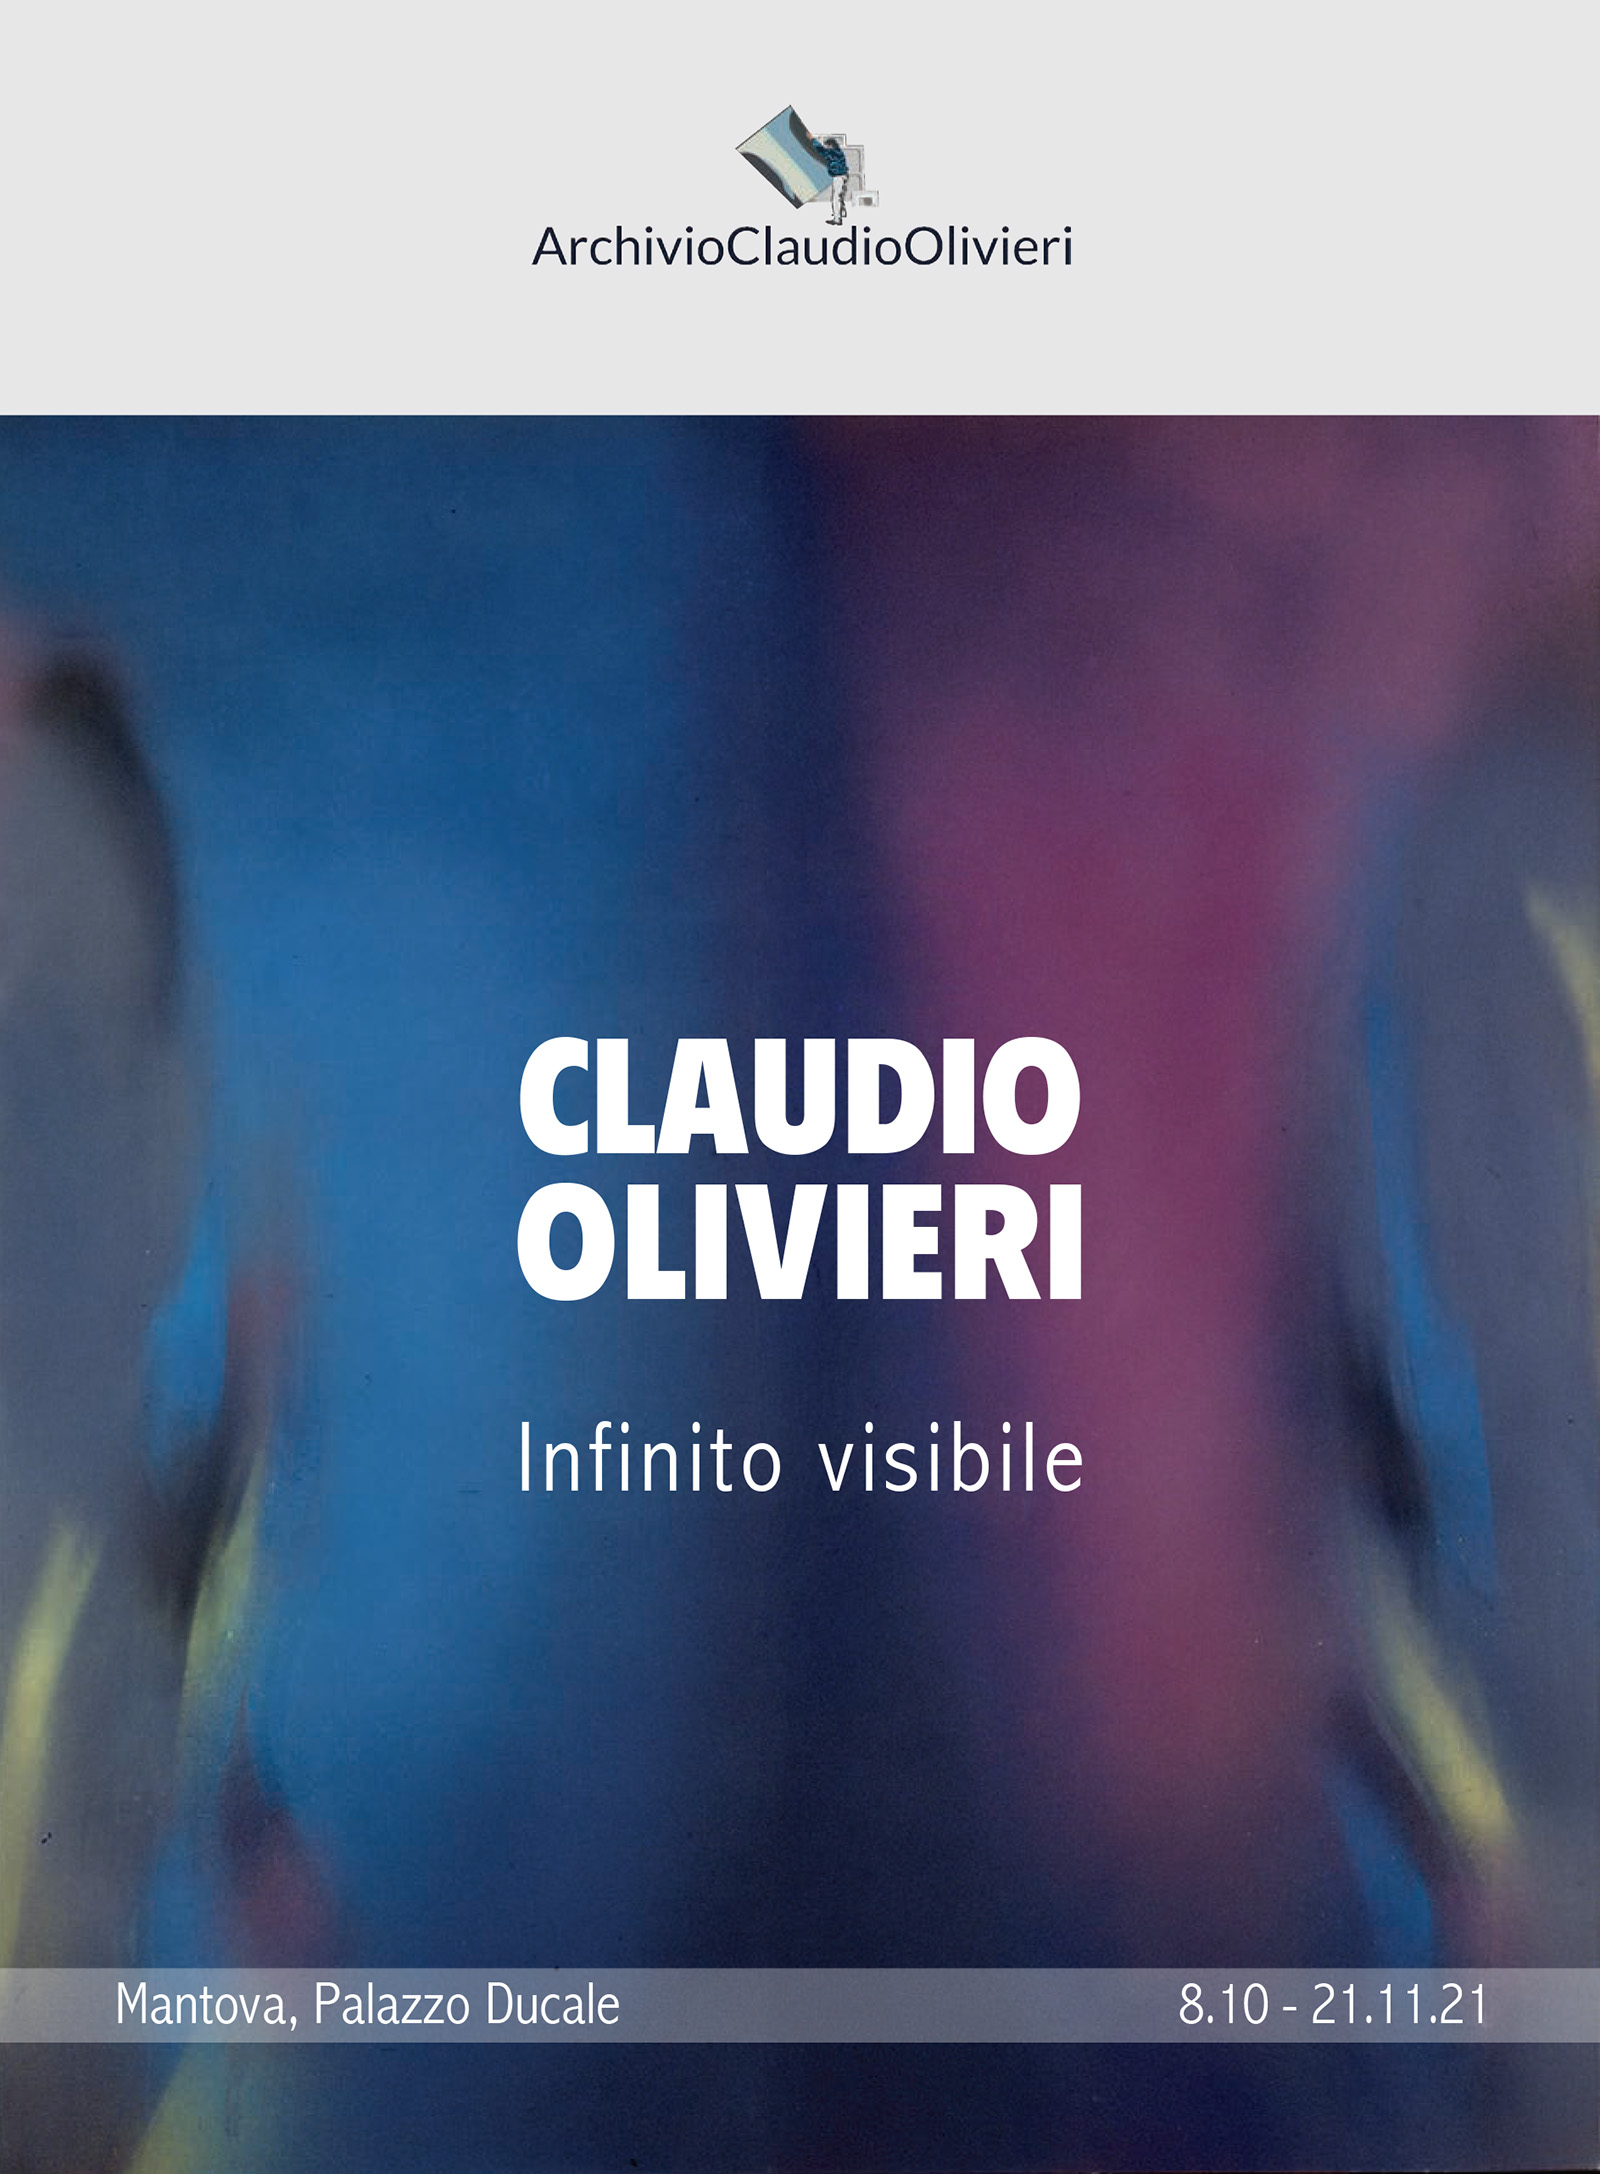 Invito Claudio Olivieri low 2